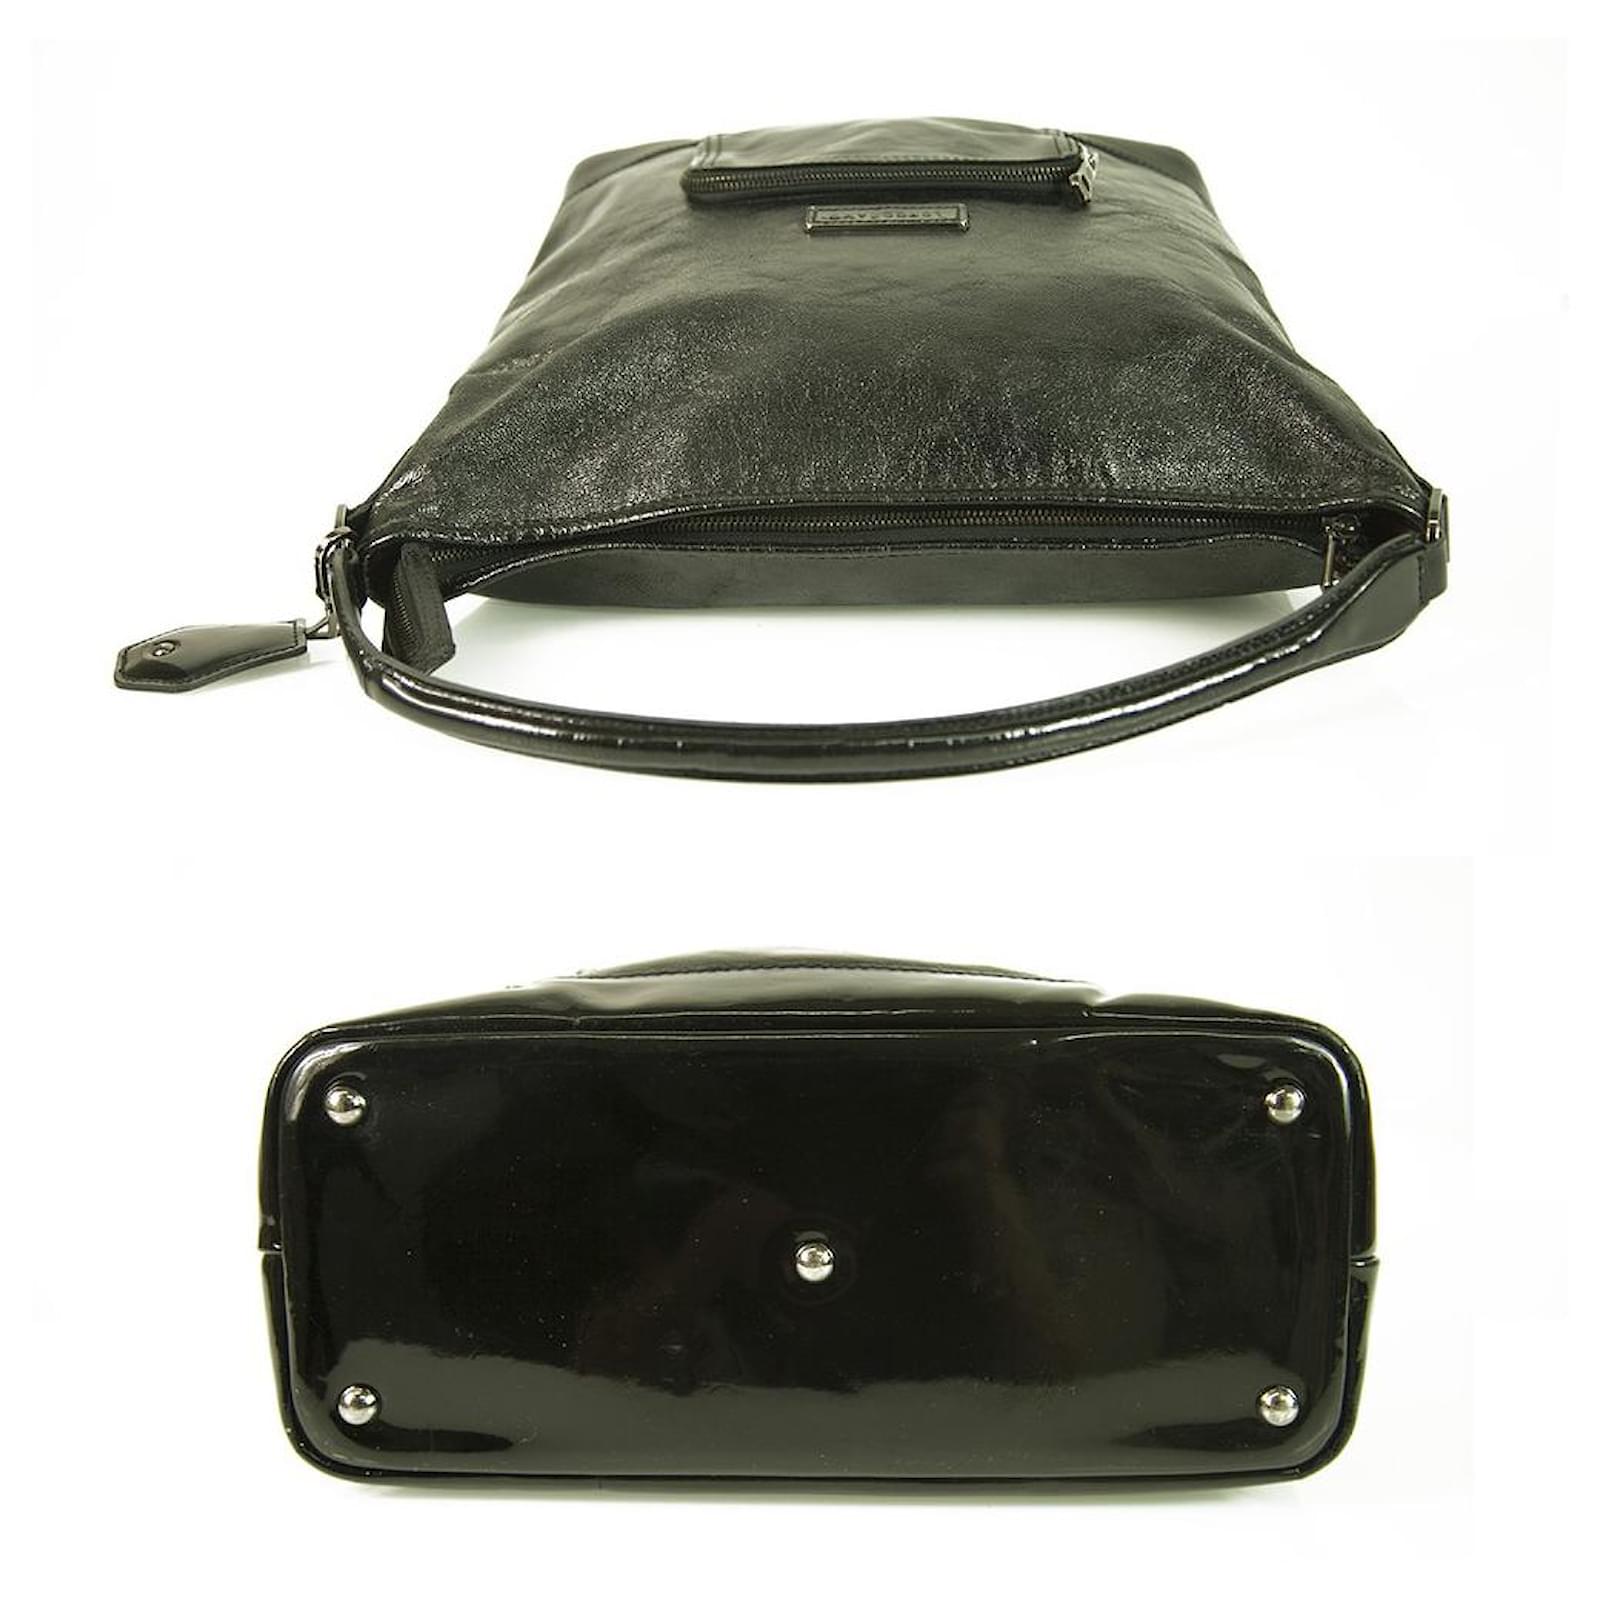 longchamp hobo bag leather